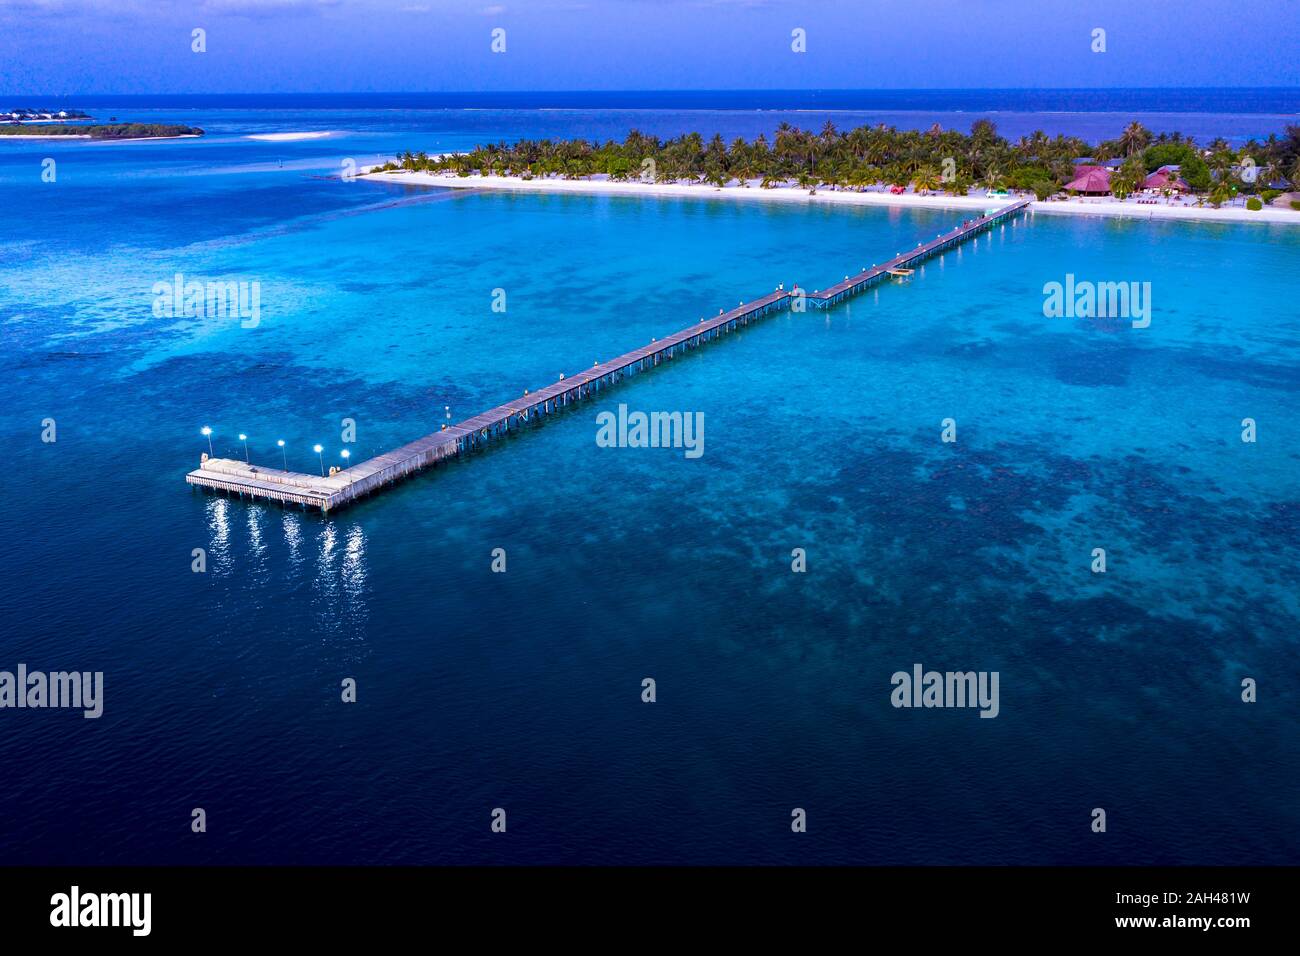 Maldivas, Bodufinolhu, vista aérea del muelle del centro turístico costero de South Male Atoll al atardecer Foto de stock